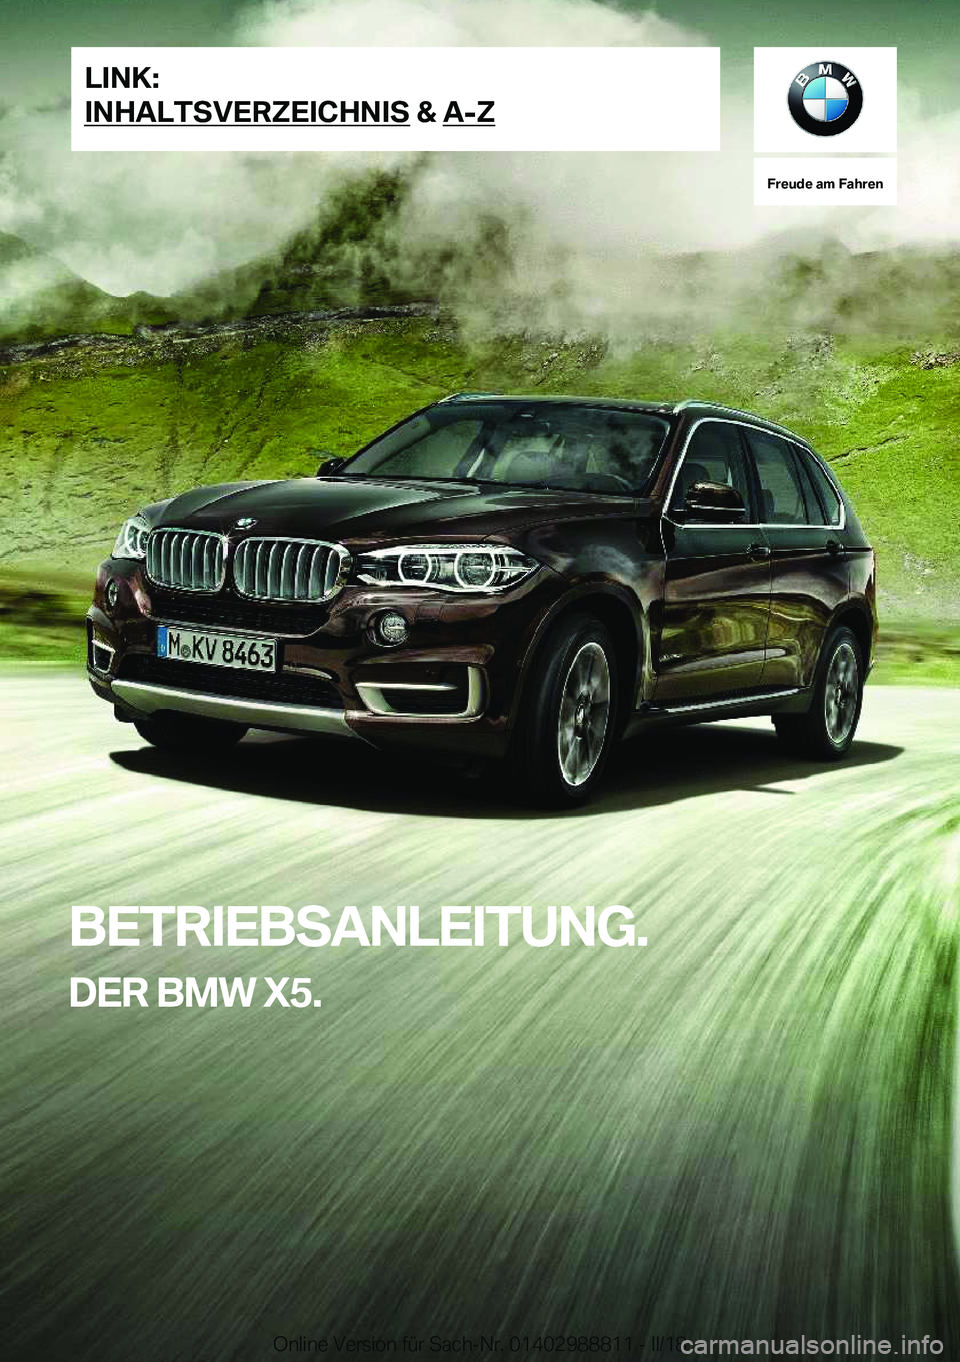 BMW X5 2018  Betriebsanleitungen (in German) �F�r�e�u�d�e��a�m��F�a�h�r�e�n
�B�E�T�R�I�E�B�S�A�N�L�E�I�T�U�N�G�.�D�E�R��B�M�W��X�5�.�L�I�N�K�:
�I�N�H�A�L�T�S�V�E�R�Z�E�I�C�H�N�I�S��&��A�-�Z�O�n�l�i�n�e� �V�e�r�s�i�o�n� �f�